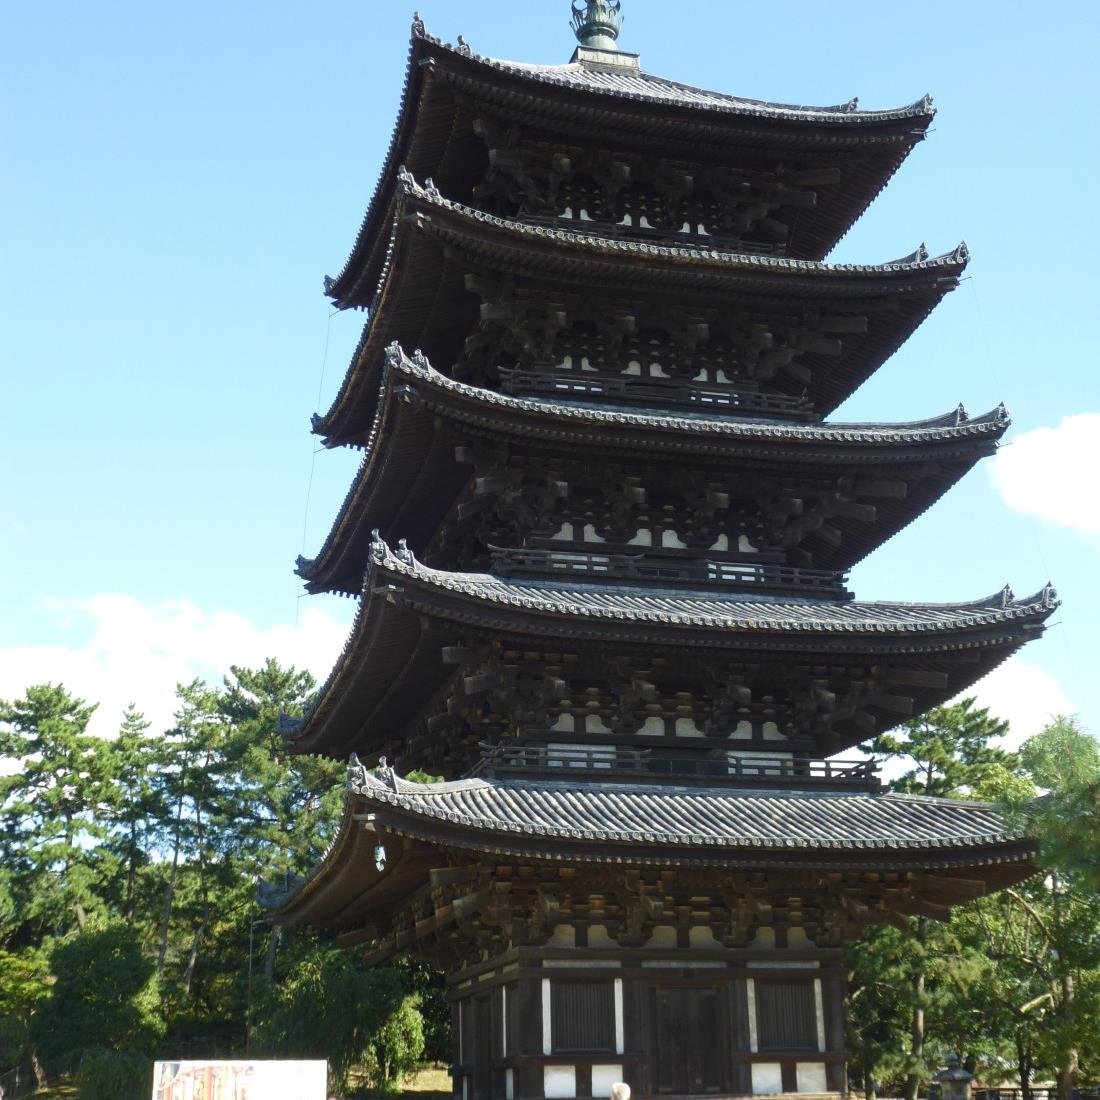 神社仏閣、お城めぐり大好き。歴史が面白くてはまっています。その他目についた面白い景色もバンバン写真撮ろうと思っています。現在は特にお寺と神社のＨＰづくりにいそしんでいます。ＨＰのＵＲＬ、http://konicyan13..sakura.ne.jp